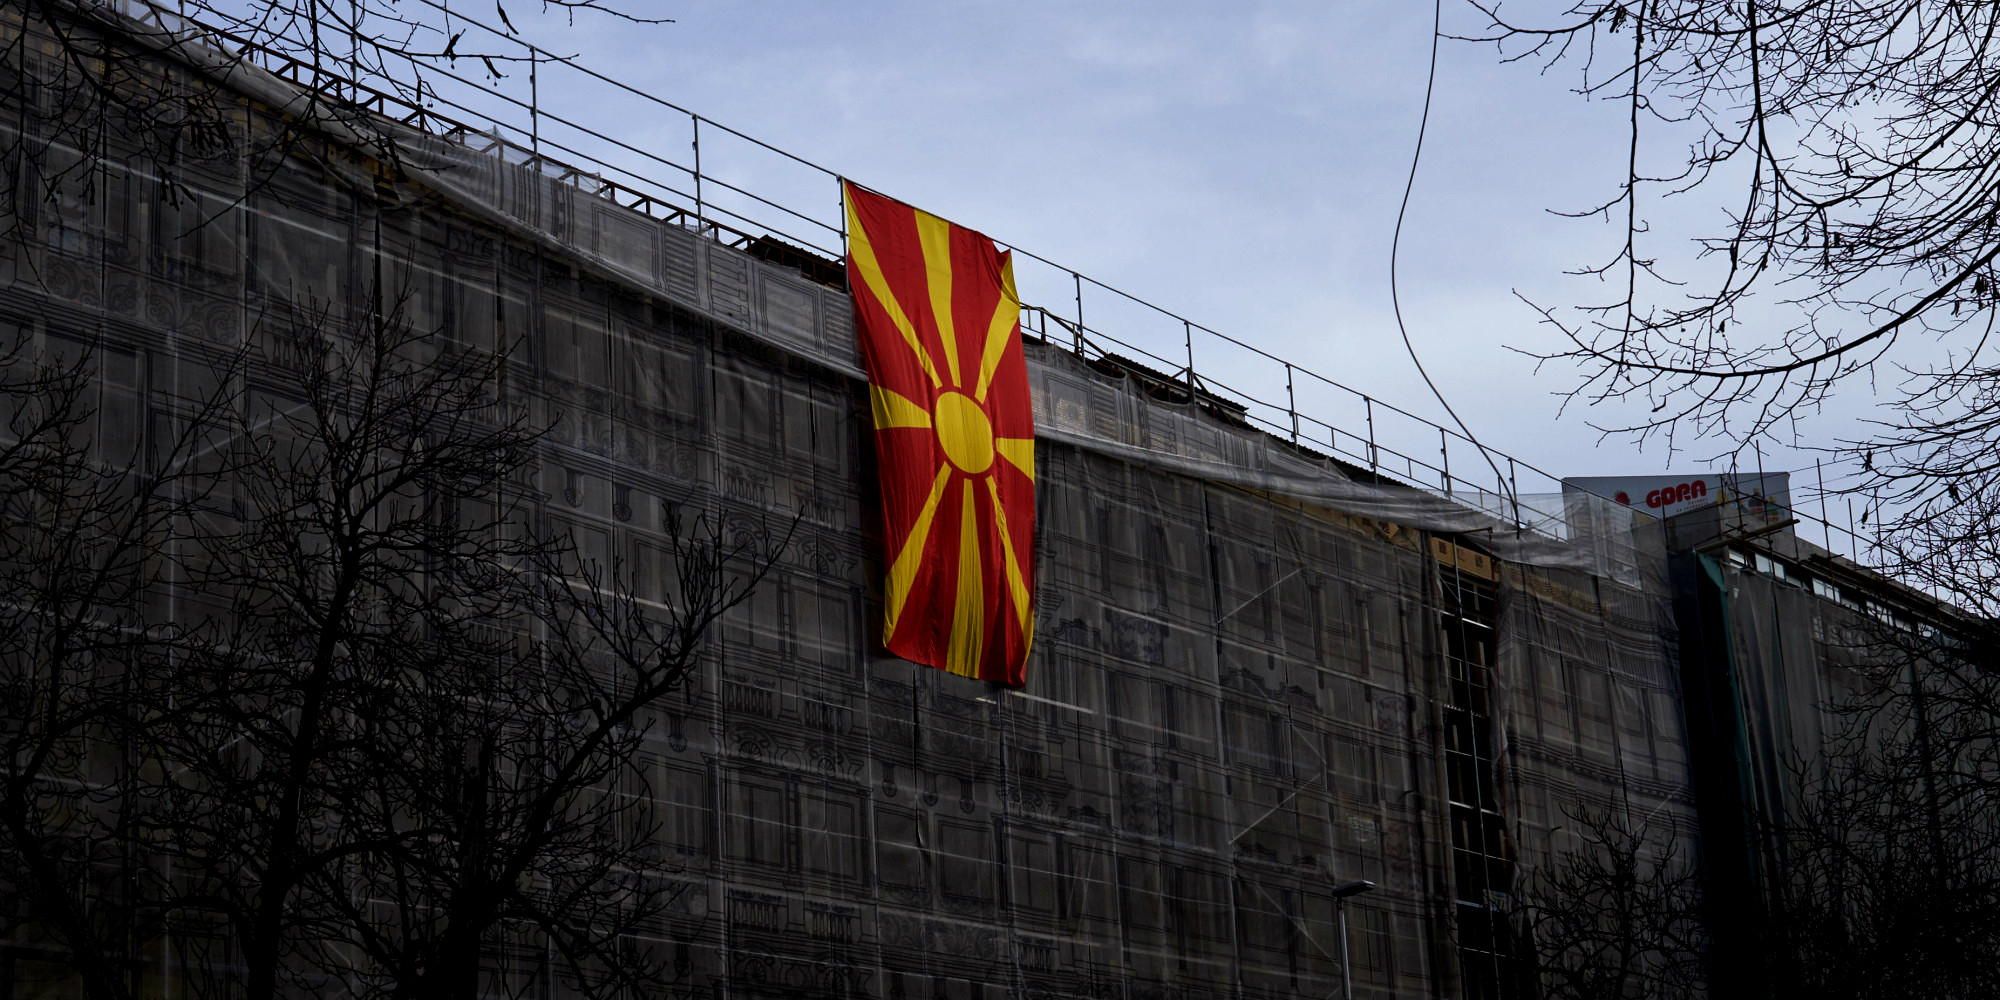 Συνάντηση αντιεξουσιαστών από Ελλάδα και ΠΓΔΜ για το Μακεδονικό